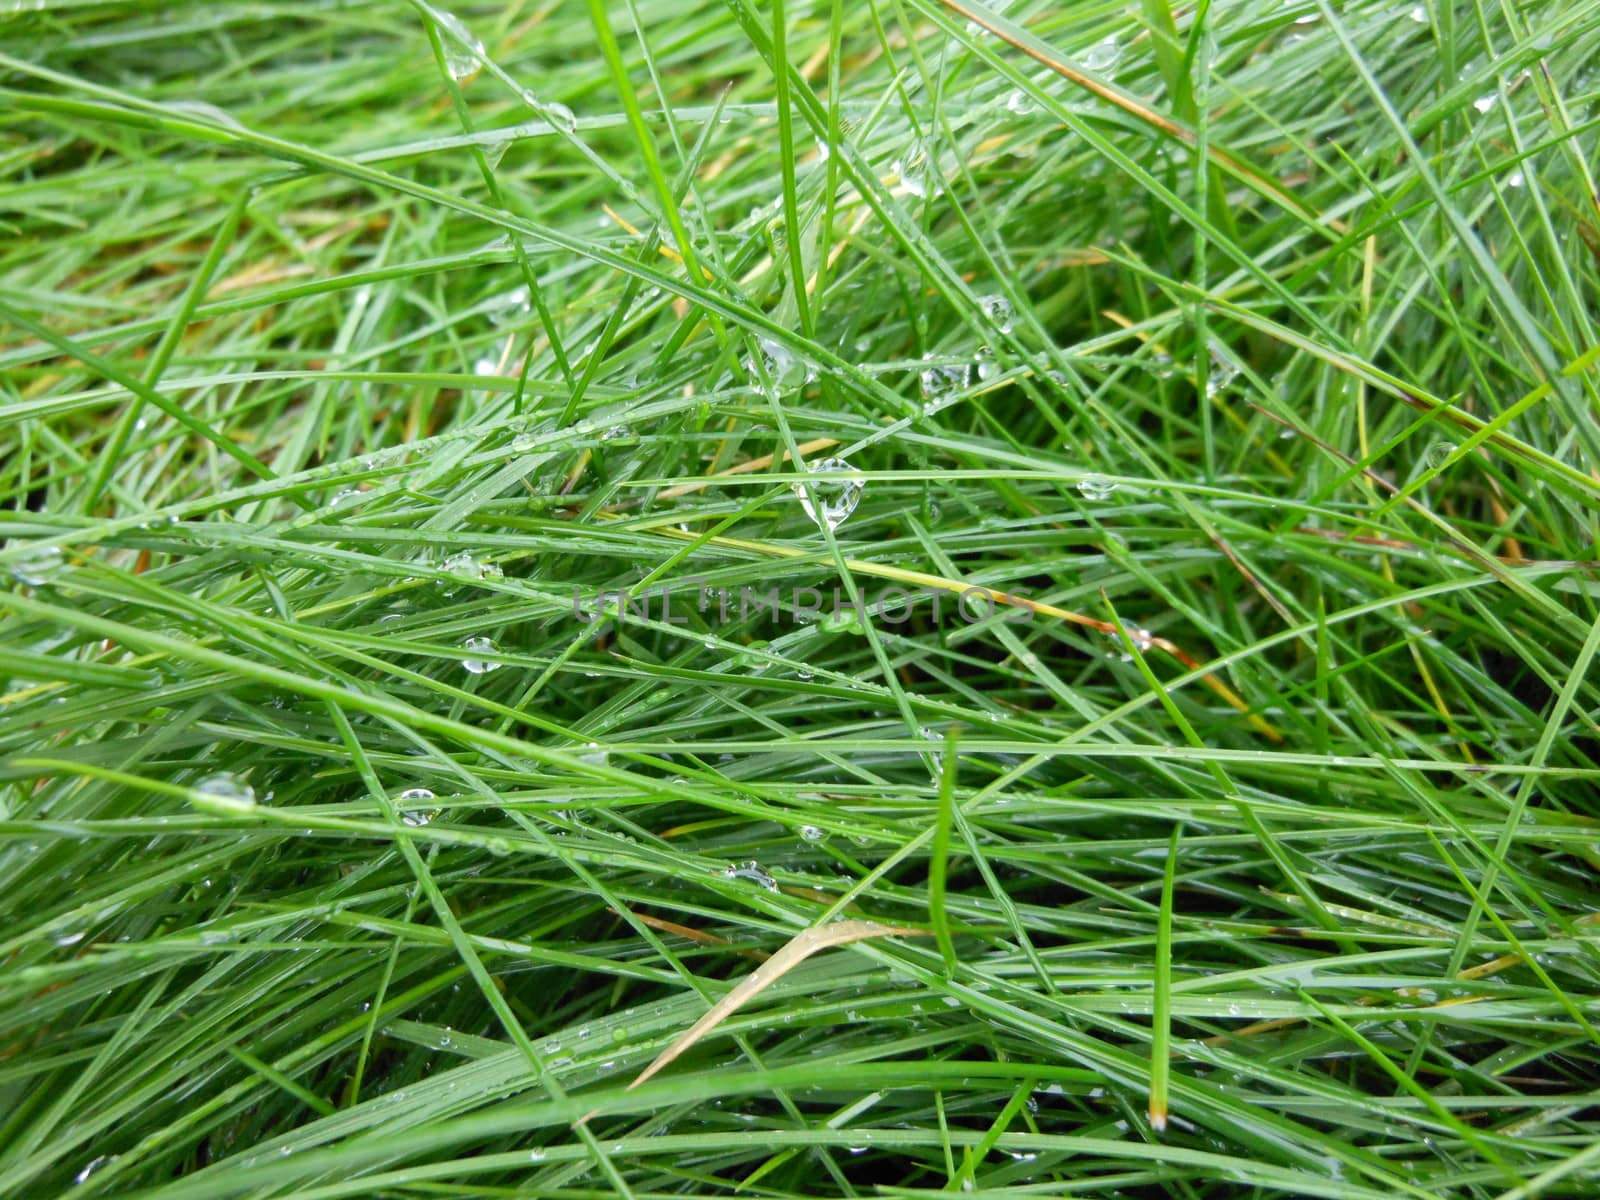 Close-up of green grass after a rainfall.